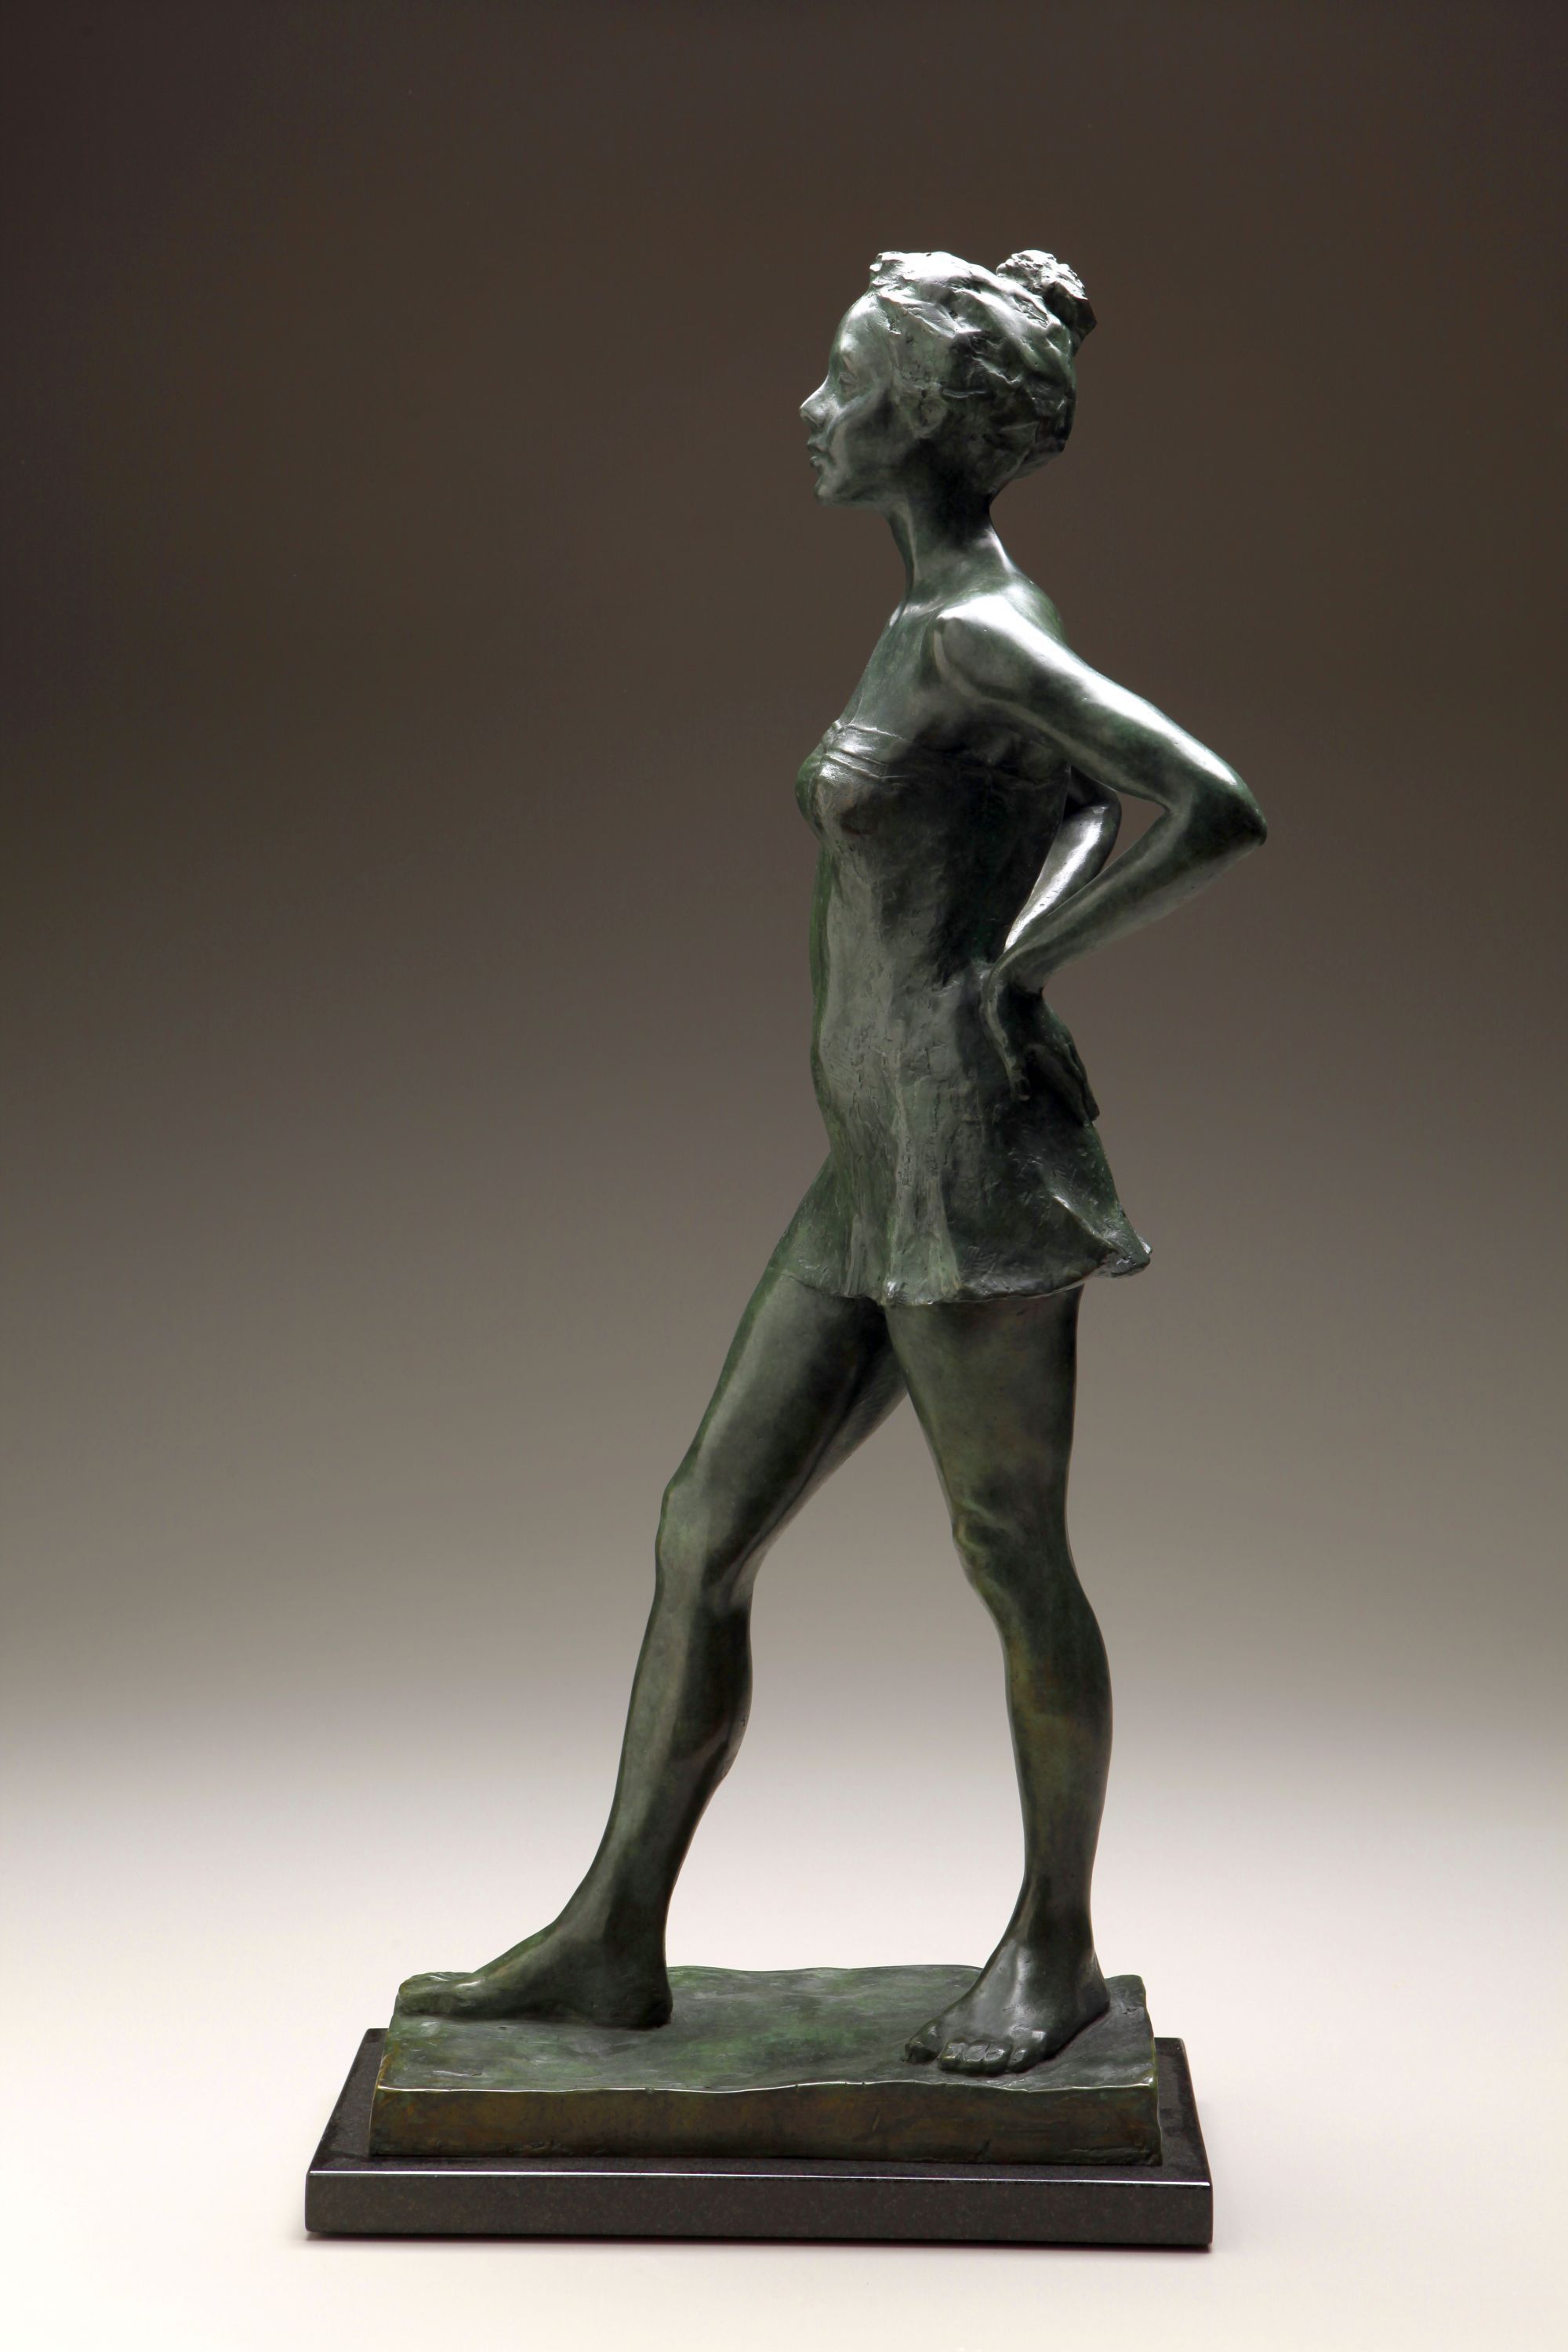 Dancer, bronze, 27 x 7 x 13 inches